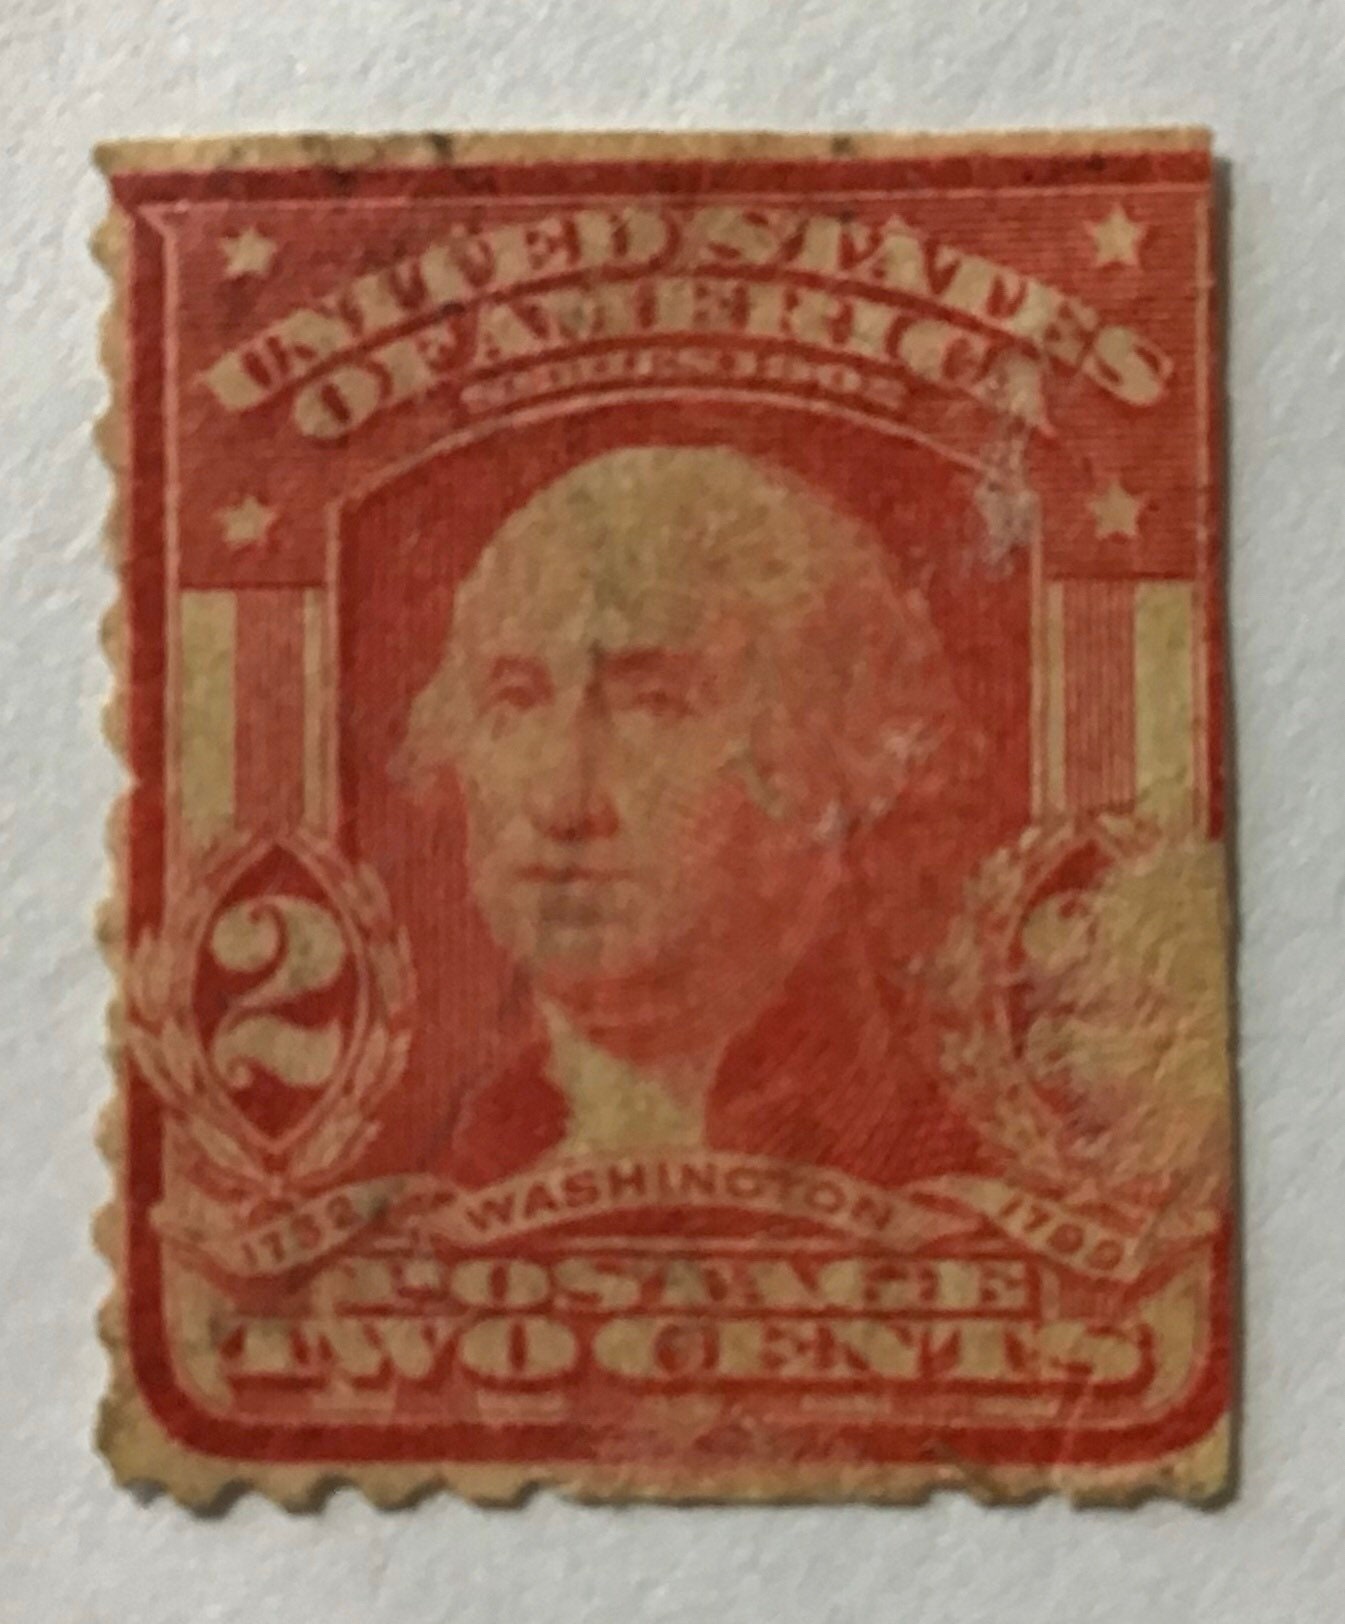 Bicentenaire de Washington : Timbre-poste de 2 cents